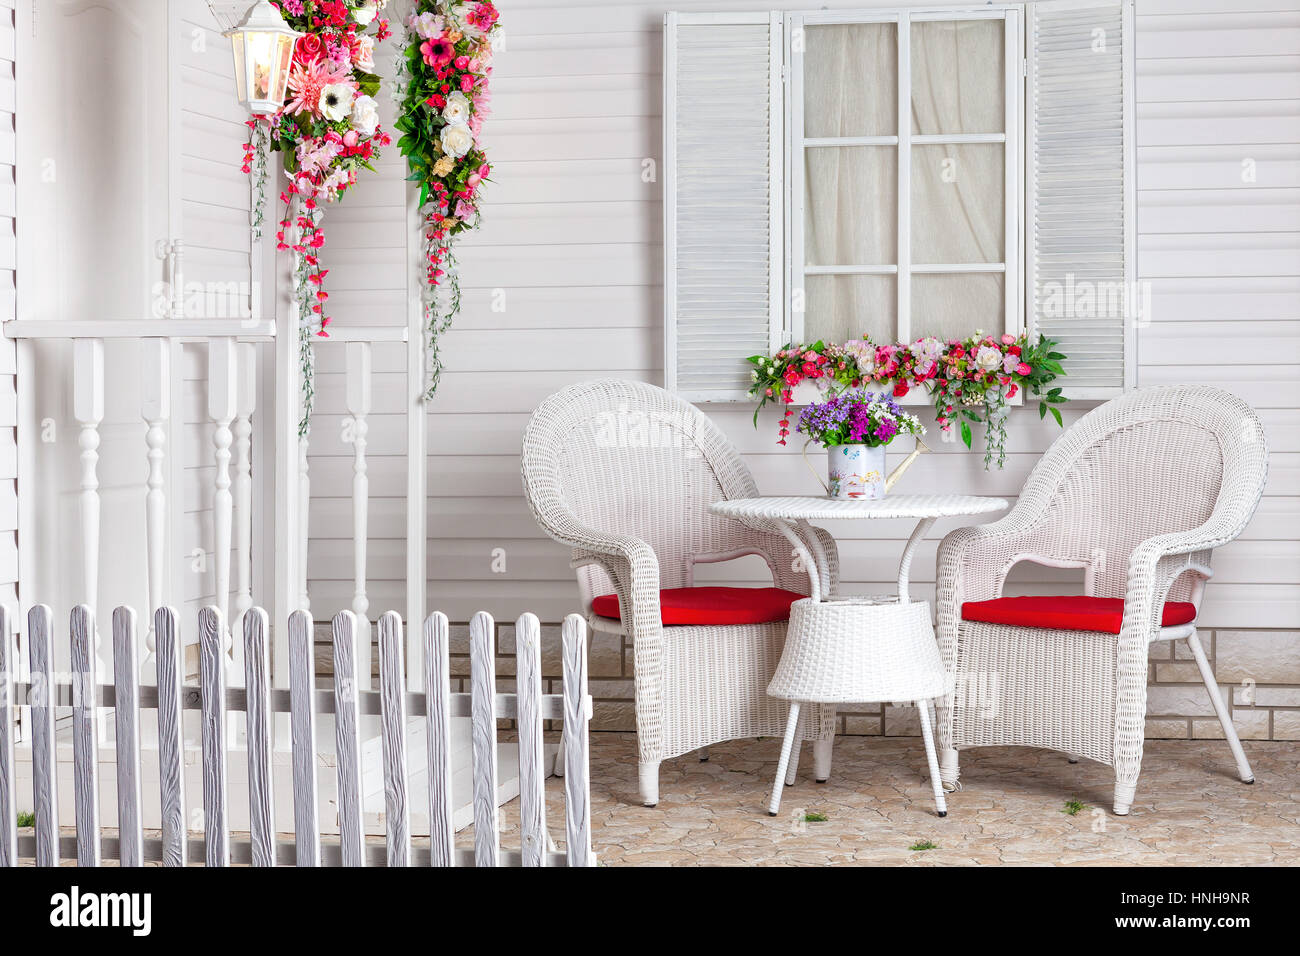 White country house in stile provenzale decorato con fiori. La residenza estiva e un luogo per rilassarsi con mobili di vimini. Foto Stock